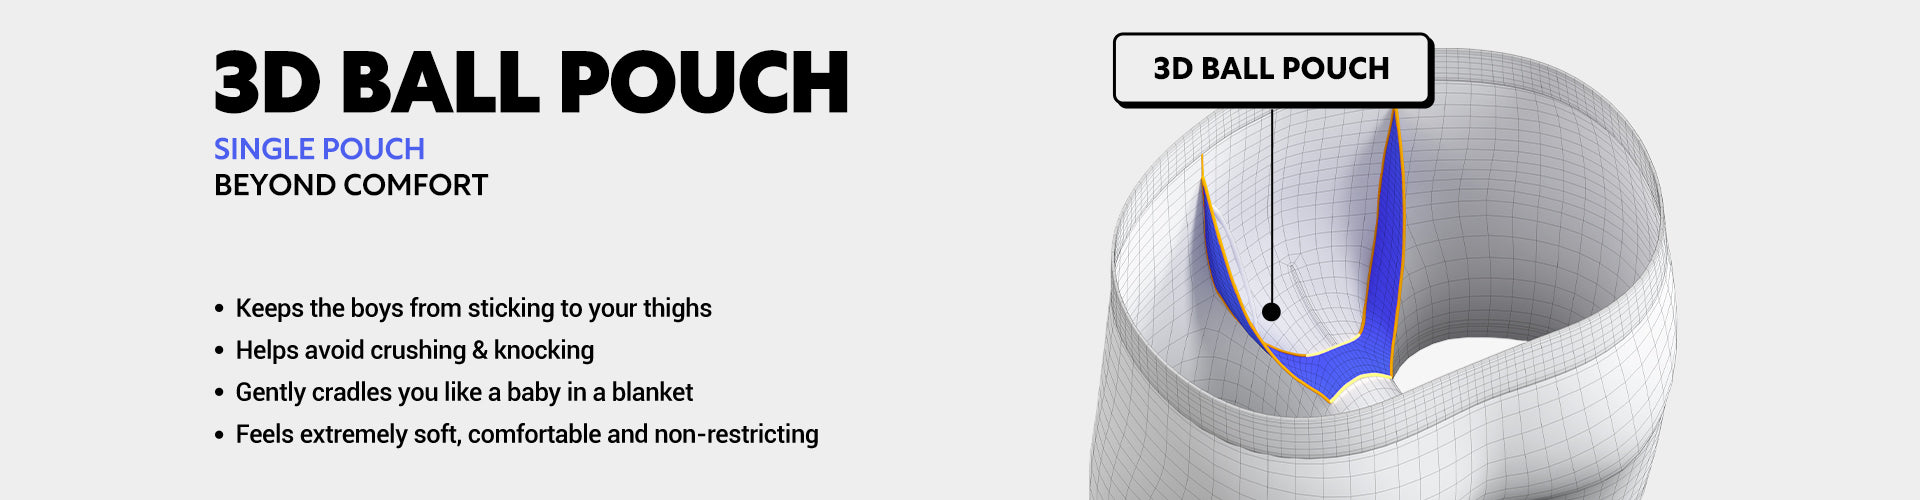 3D Ball Pouch